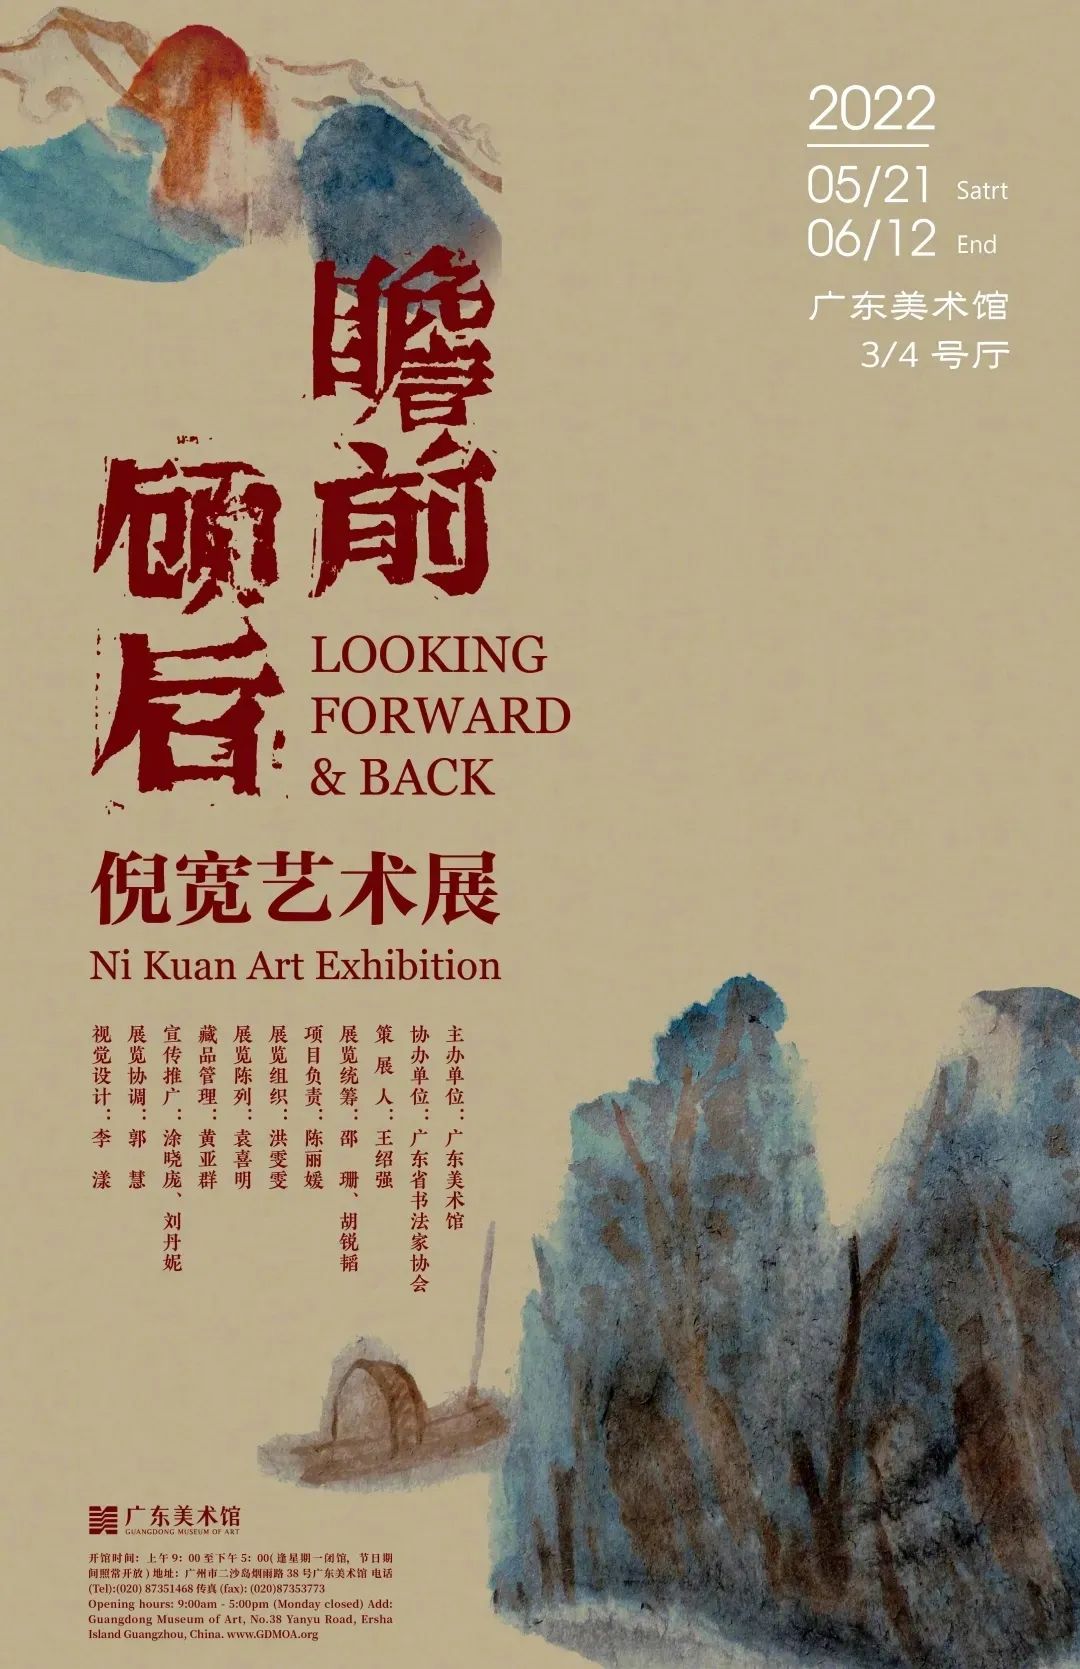 9张中文展览海报设计